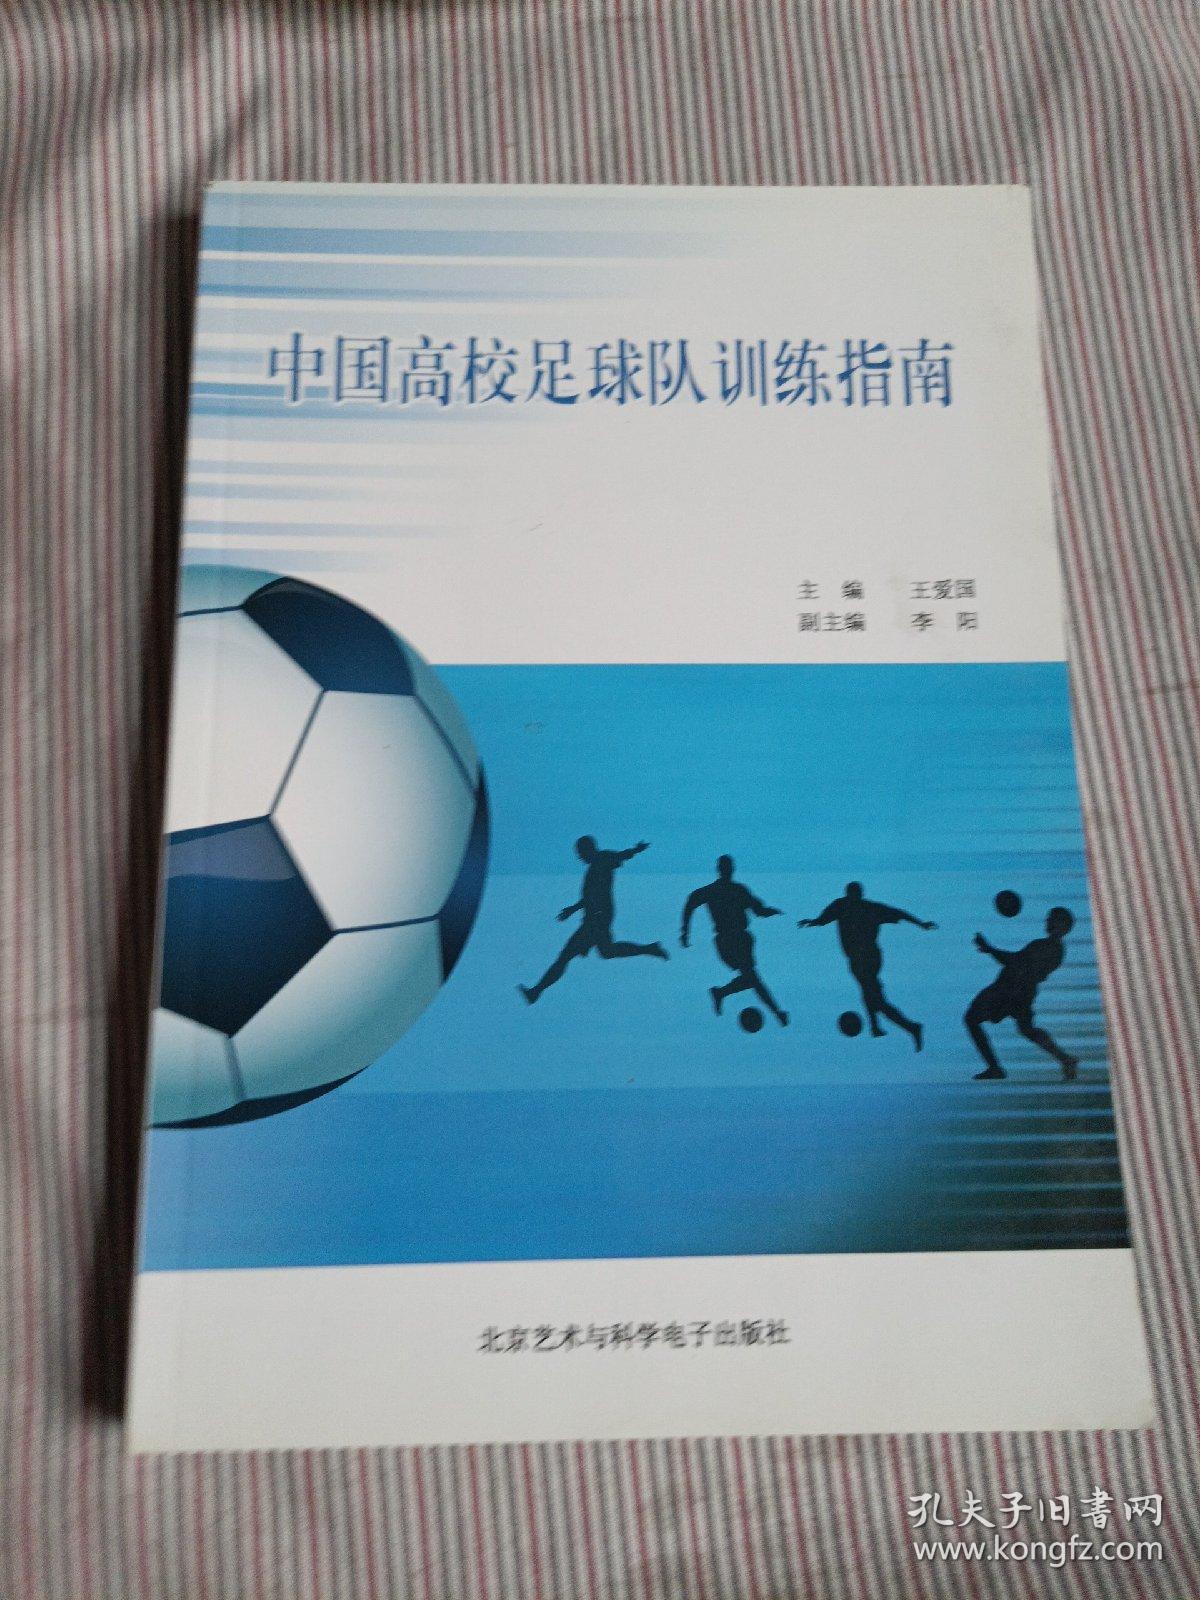 中国高校足球队训练指南